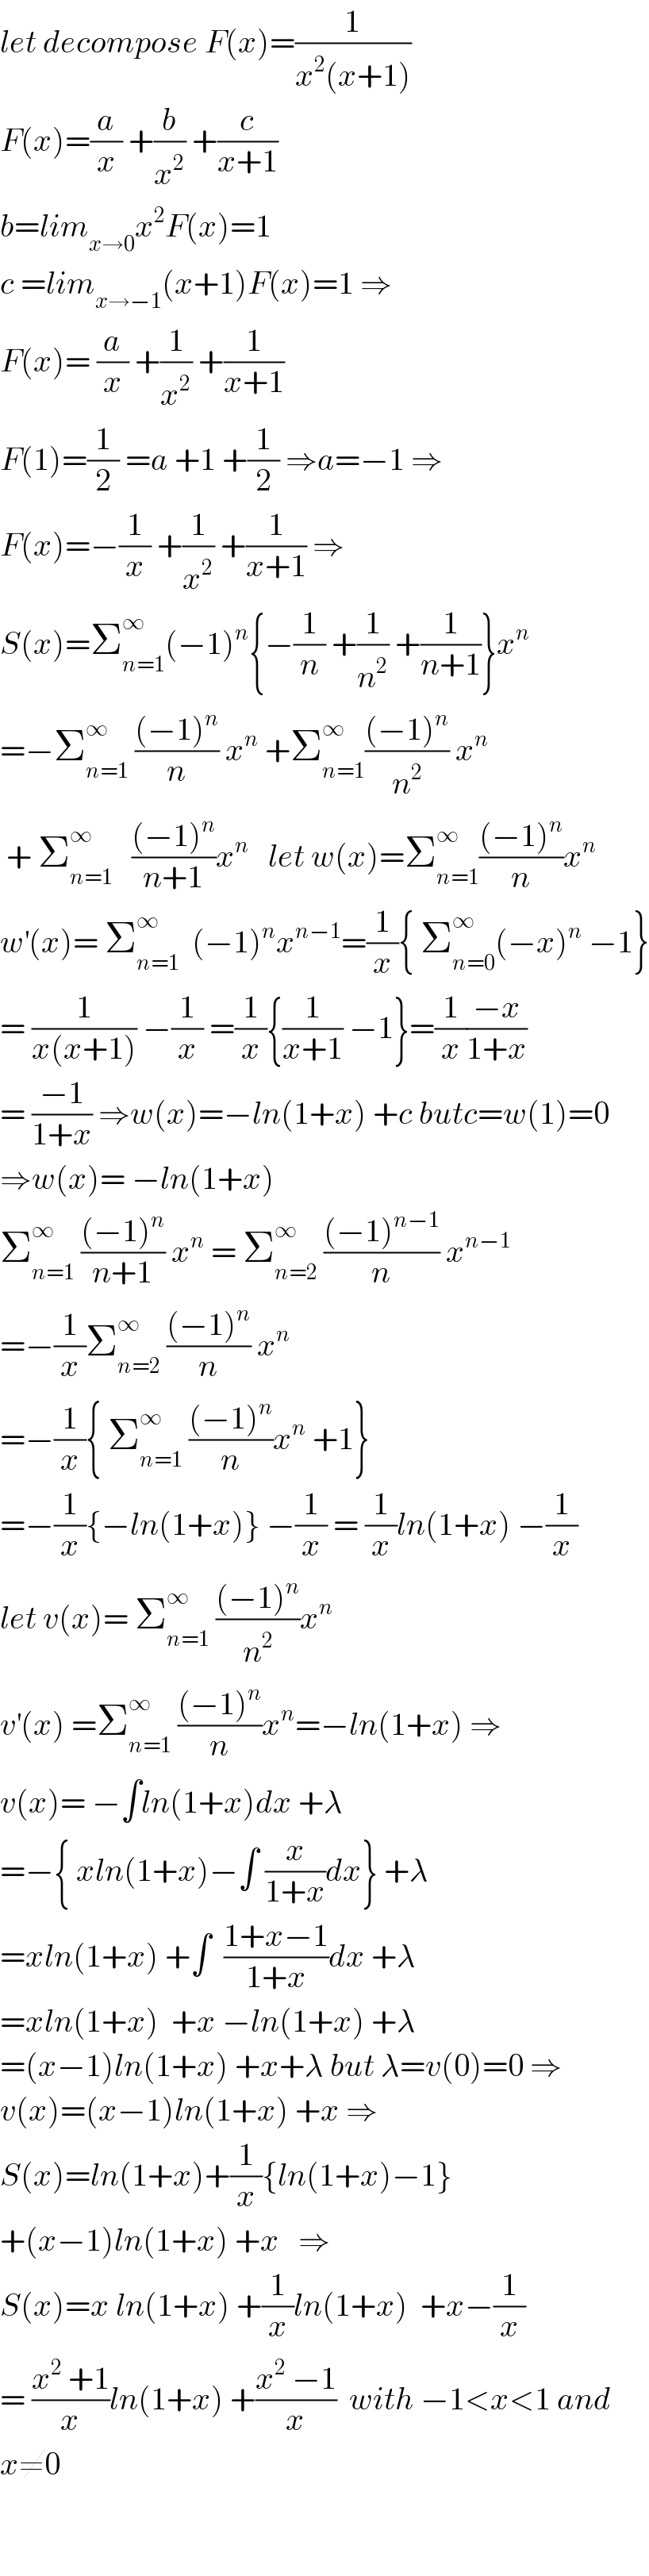 let decompose F(x)=(1/(x^2 (x+1)))  F(x)=(a/x) +(b/x^2 ) +(c/(x+1))  b=lim_(x→0) x^2 F(x)=1  c =lim_(x→−1) (x+1)F(x)=1 ⇒  F(x)= (a/x) +(1/x^2 ) +(1/(x+1))  F(1)=(1/2) =a +1 +(1/2) ⇒a=−1 ⇒  F(x)=−(1/x) +(1/x^2 ) +(1/(x+1)) ⇒  S(x)=Σ_(n=1) ^∞ (−1)^n {−(1/n) +(1/n^2 ) +(1/(n+1))}x^n   =−Σ_(n=1) ^∞  (((−1)^n )/n) x^n  +Σ_(n=1) ^∞ (((−1)^n )/n^2 ) x^n    + Σ_(n=1) ^∞    (((−1)^n )/(n+1))x^n    let w(x)=Σ_(n=1) ^∞ (((−1)^n )/n)x^n   w^′ (x)= Σ_(n=1) ^∞   (−1)^n x^(n−1) =(1/x){ Σ_(n=0) ^∞ (−x)^n  −1}  = (1/(x(x+1))) −(1/x) =(1/x){(1/(x+1)) −1}=(1/x)((−x)/(1+x))  = ((−1)/(1+x)) ⇒w(x)=−ln(1+x) +c butc=w(1)=0  ⇒w(x)= −ln(1+x)  Σ_(n=1) ^∞  (((−1)^n )/(n+1)) x^n  = Σ_(n=2) ^∞  (((−1)^(n−1) )/n) x^(n−1)   =−(1/x)Σ_(n=2) ^∞  (((−1)^n )/n) x^n   =−(1/x){ Σ_(n=1) ^∞  (((−1)^n )/n)x^n  +1}  =−(1/x){−ln(1+x)} −(1/x) = (1/x)ln(1+x) −(1/x)  let v(x)= Σ_(n=1) ^∞  (((−1)^n )/n^2 )x^n   v^′ (x) =Σ_(n=1) ^∞  (((−1)^n )/n)x^n =−ln(1+x) ⇒  v(x)= −∫ln(1+x)dx +λ  =−{ xln(1+x)−∫ (x/(1+x))dx} +λ  =xln(1+x) +∫  ((1+x−1)/(1+x))dx +λ  =xln(1+x)  +x −ln(1+x) +λ  =(x−1)ln(1+x) +x+λ but λ=v(0)=0 ⇒  v(x)=(x−1)ln(1+x) +x ⇒  S(x)=ln(1+x)+(1/x){ln(1+x)−1}  +(x−1)ln(1+x) +x   ⇒  S(x)=x ln(1+x) +(1/x)ln(1+x)  +x−(1/x)  = ((x^2  +1)/x)ln(1+x) +((x^2  −1)/x)  with −1<x<1 and  x≠0      